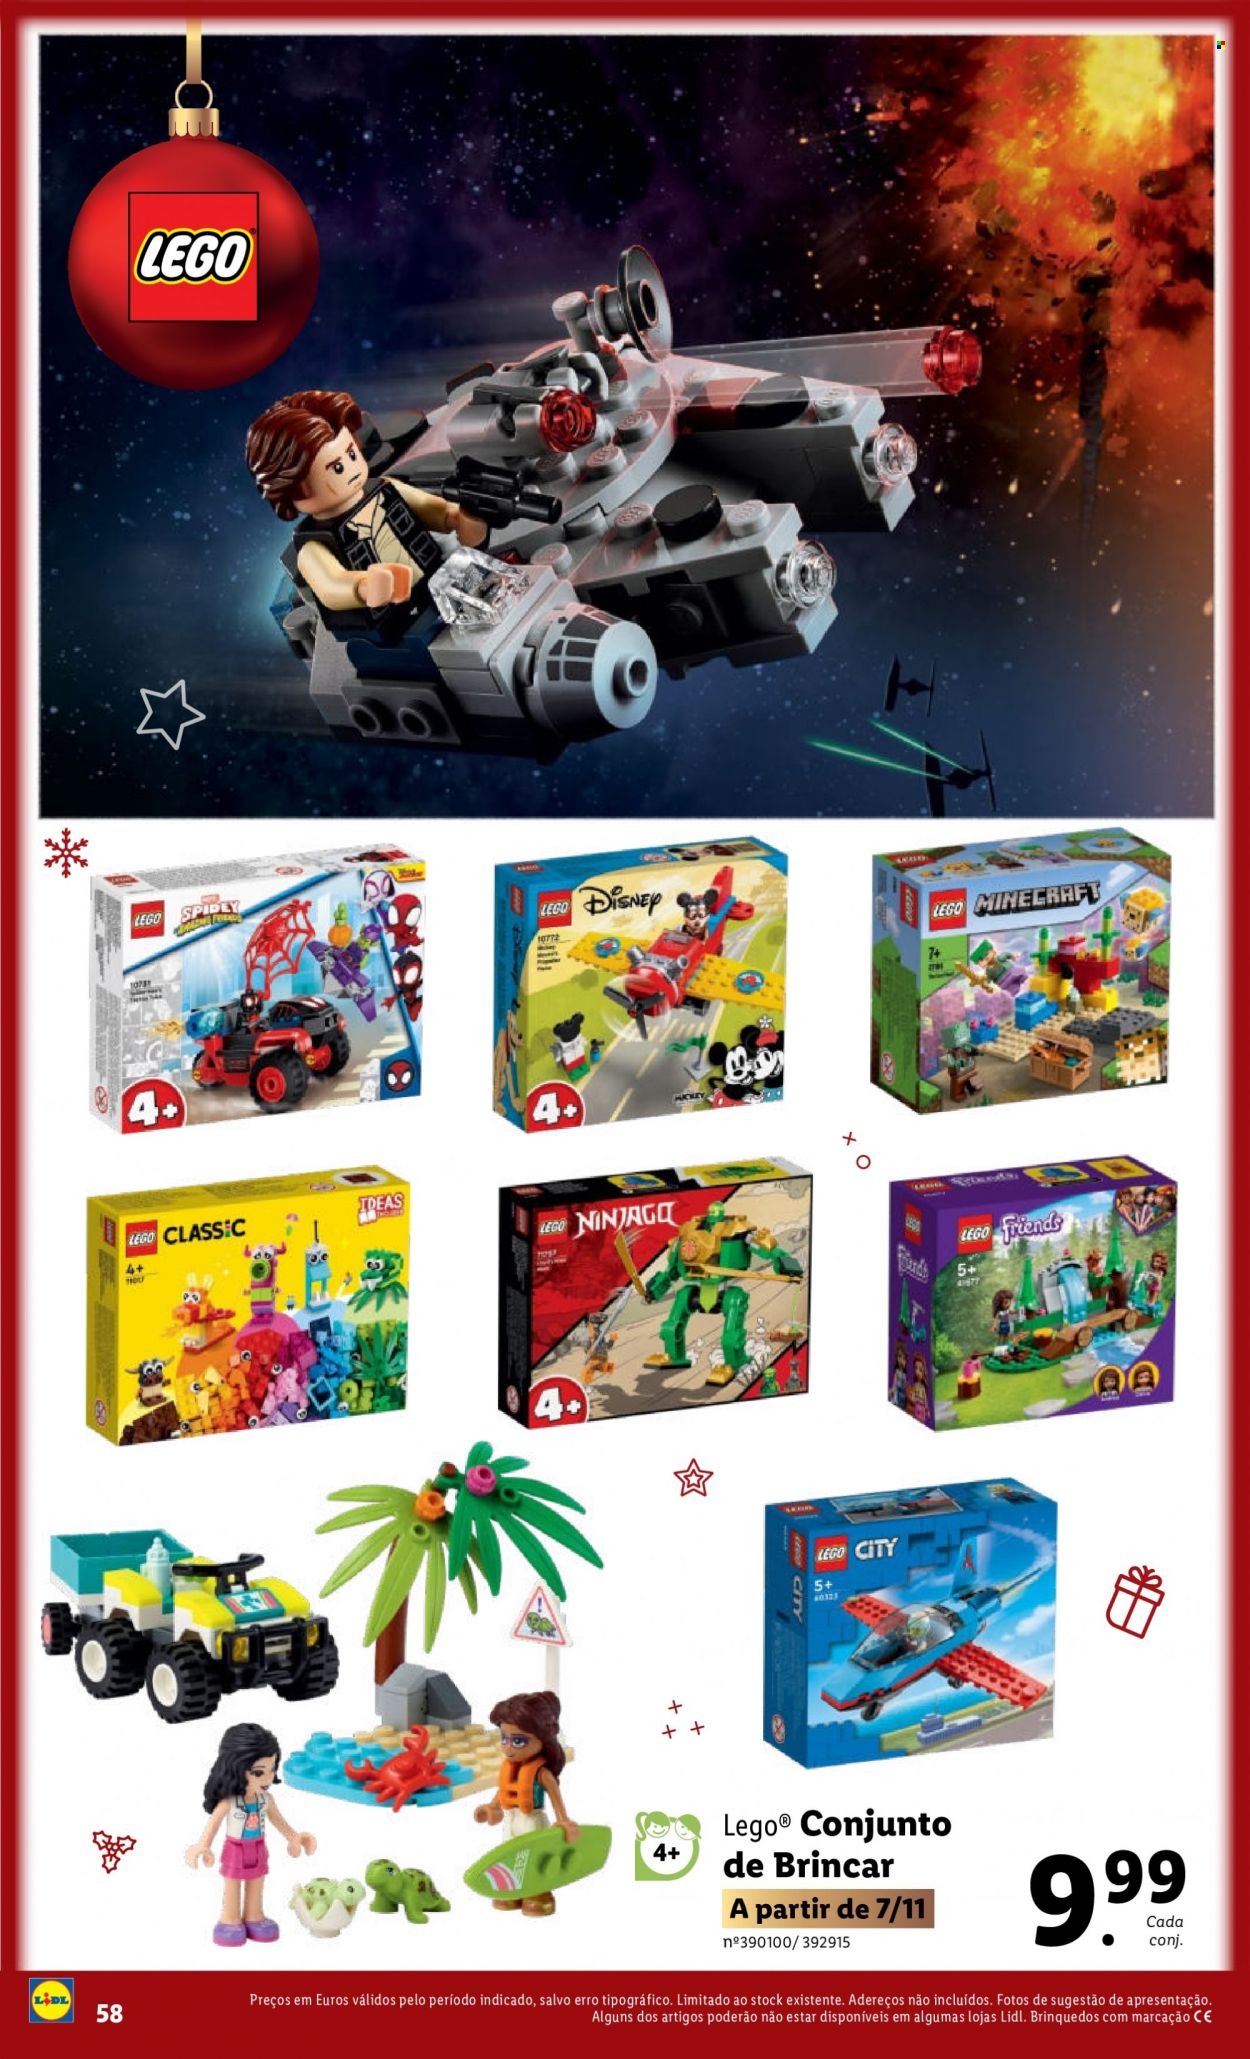 thumbnail - Folheto Lidl - 7.11.2022 - 15.12.2022 - Produtos em promoção - Disney, LEGO, LEGO Ninjago, LEGO Minecraft, brinquedo, LEGO City. Página 58.